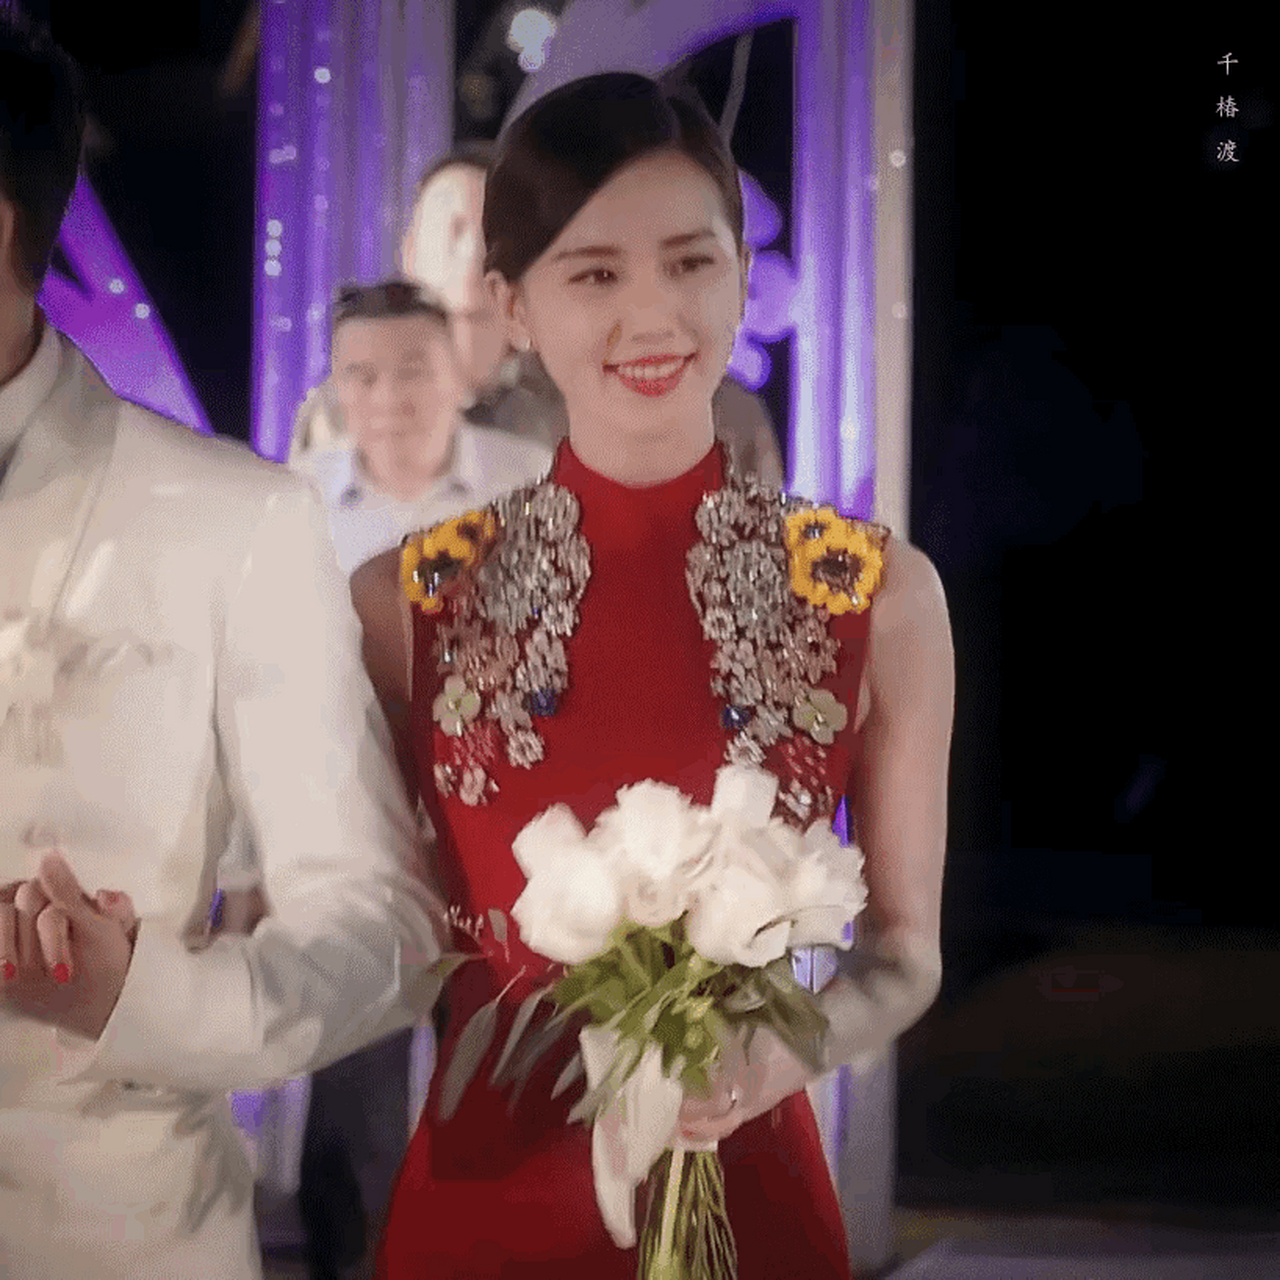 刘诗诗当年在巴厘岛举办婚礼时穿的这套红色敬酒服,是真的很适合她呀